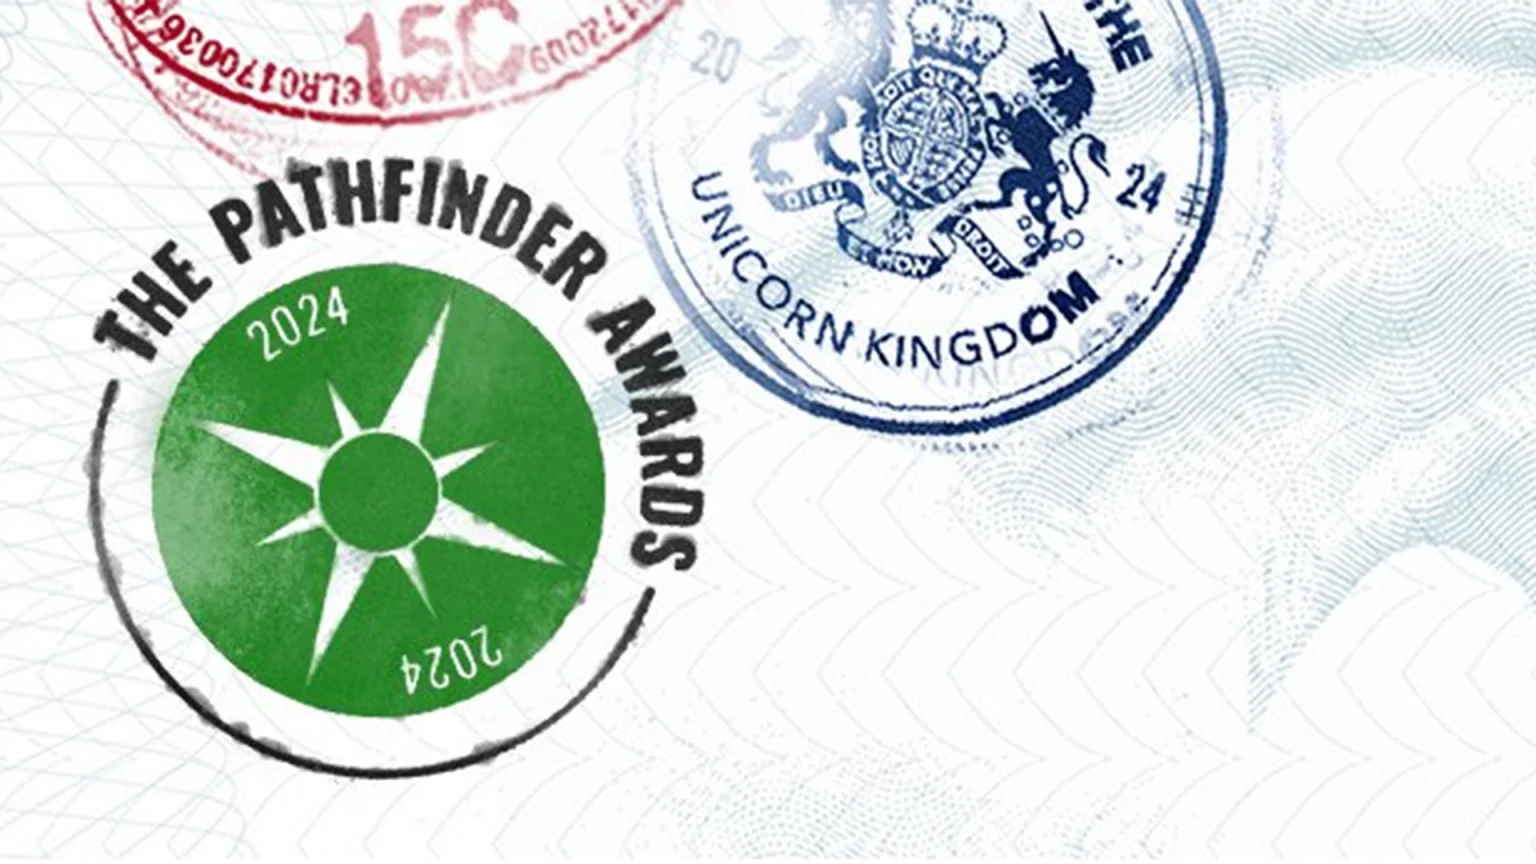 Pathfinder Awards, yerli girişimlerin başvurusunu bekliyor